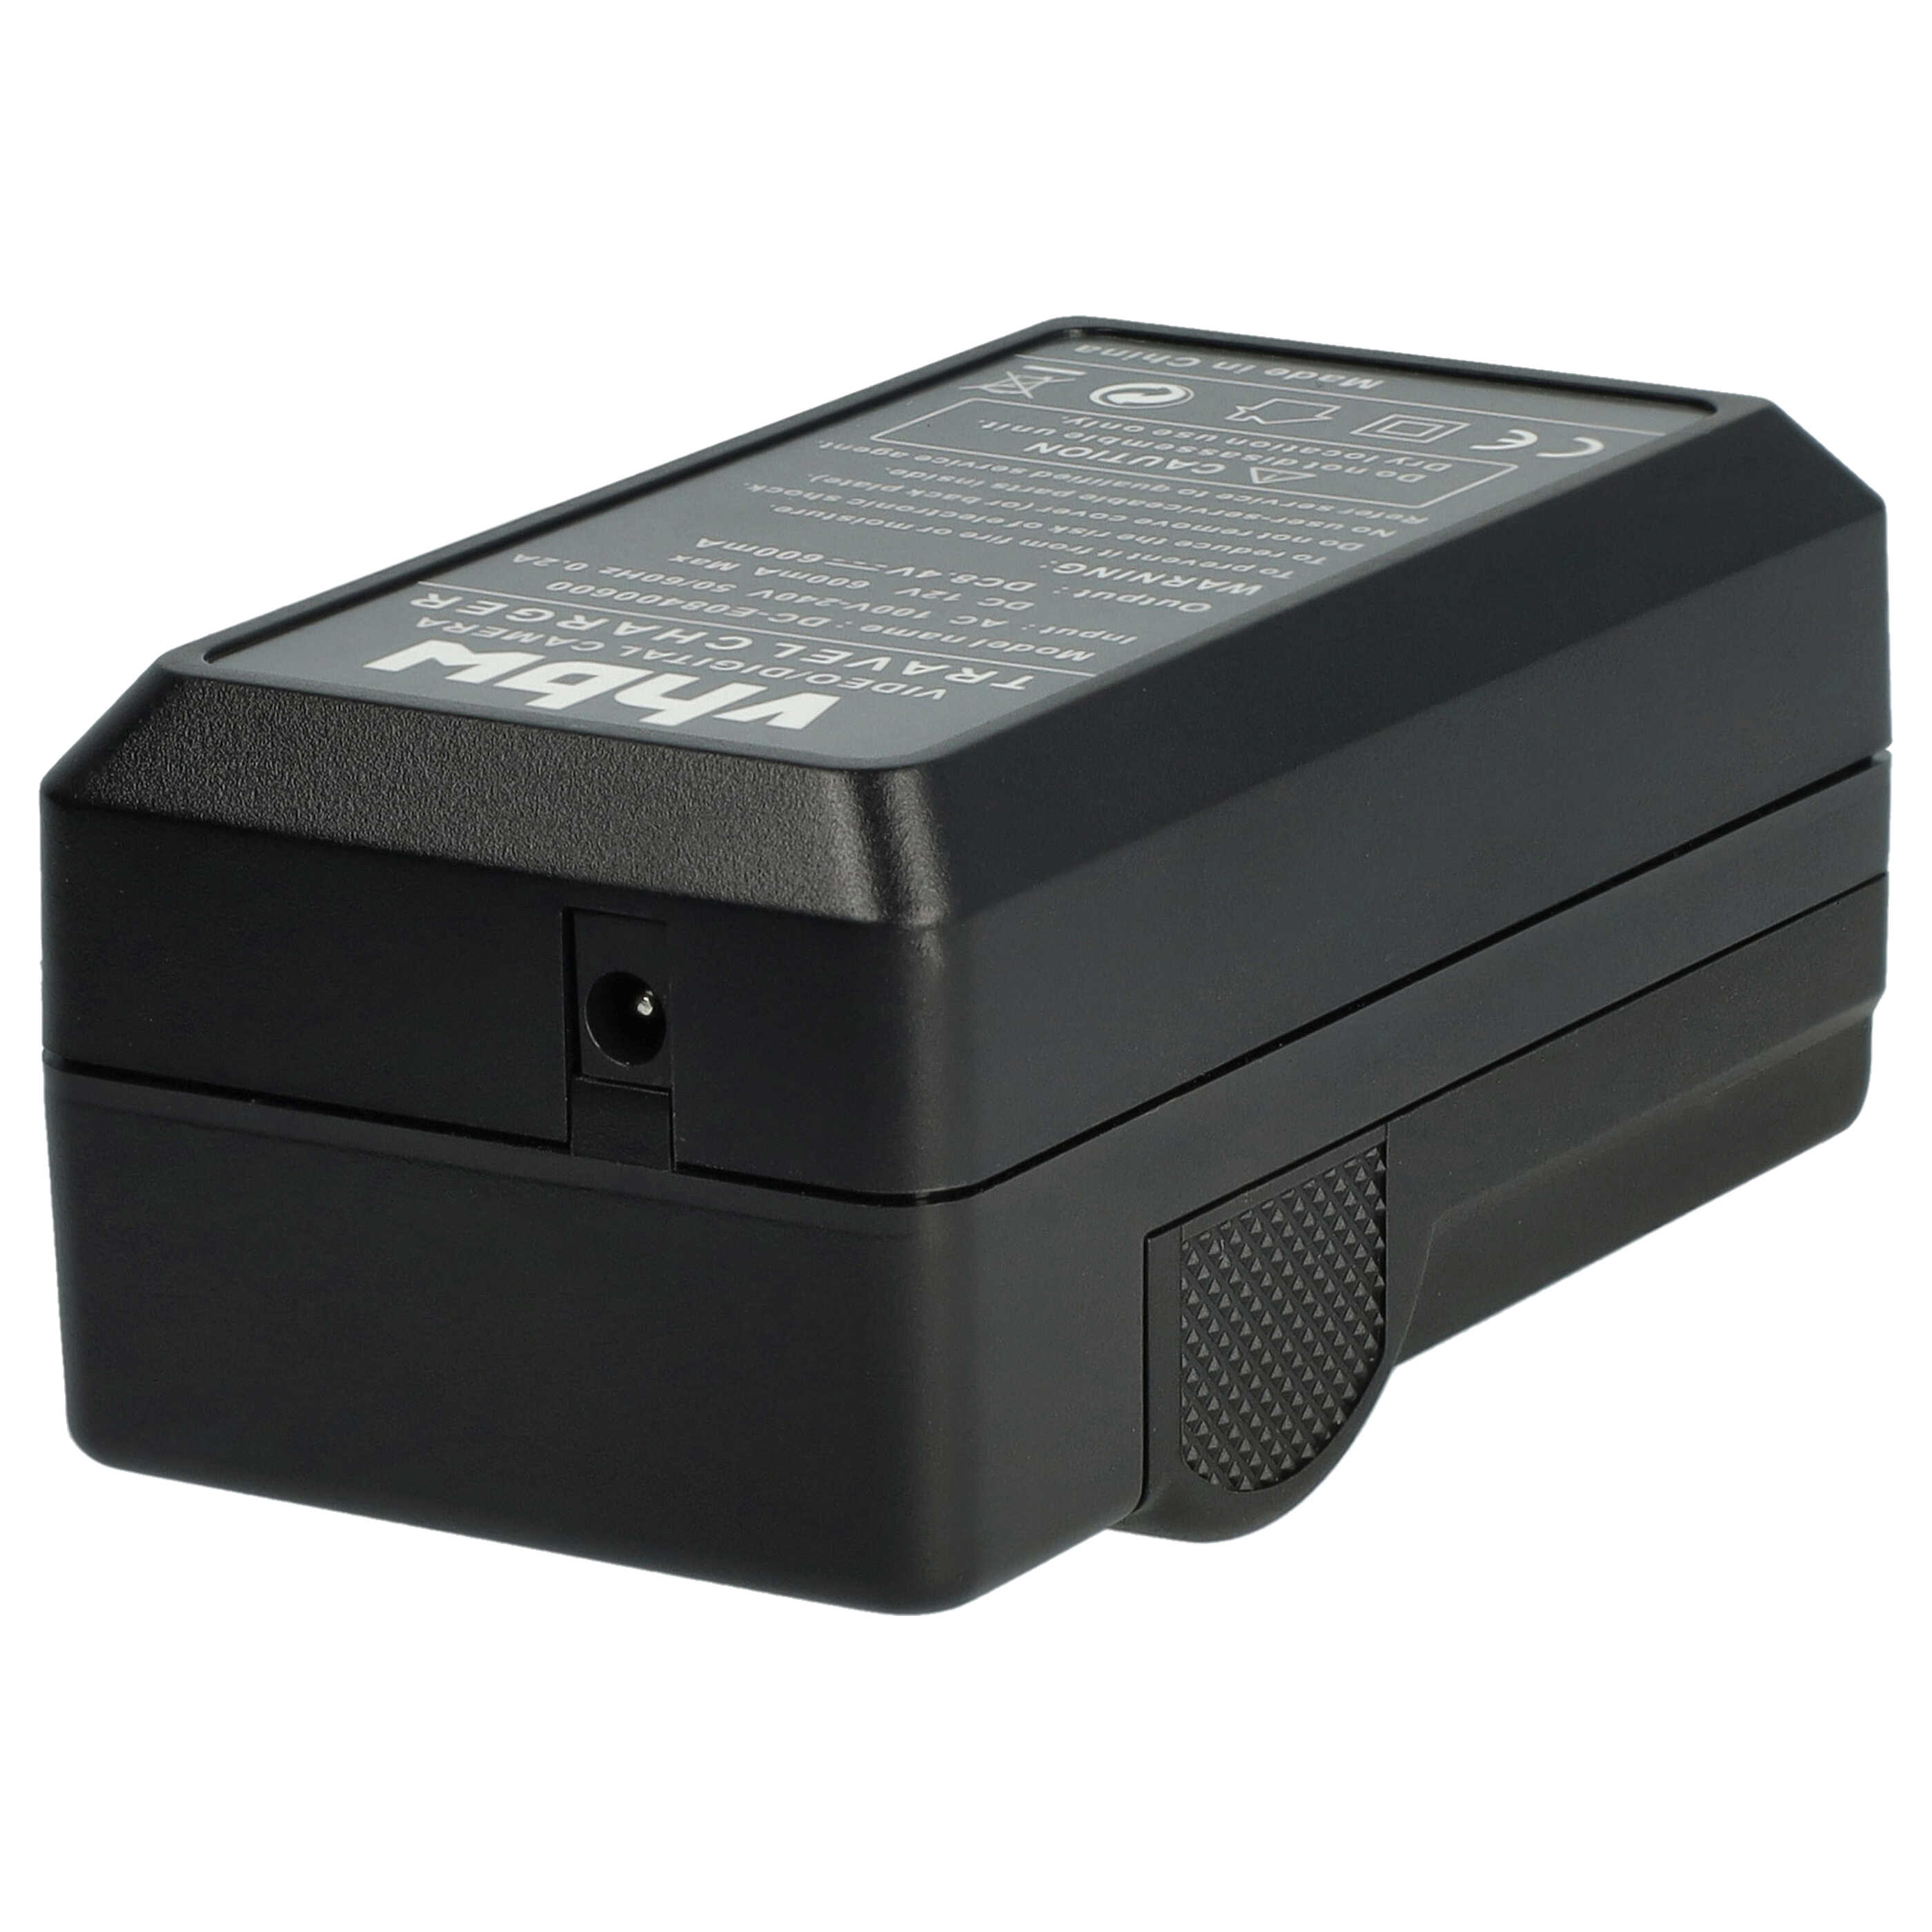 Caricabatterie + adattatore da auto per fotocamera Samsung - 0,6A 8,4V 88,5cm